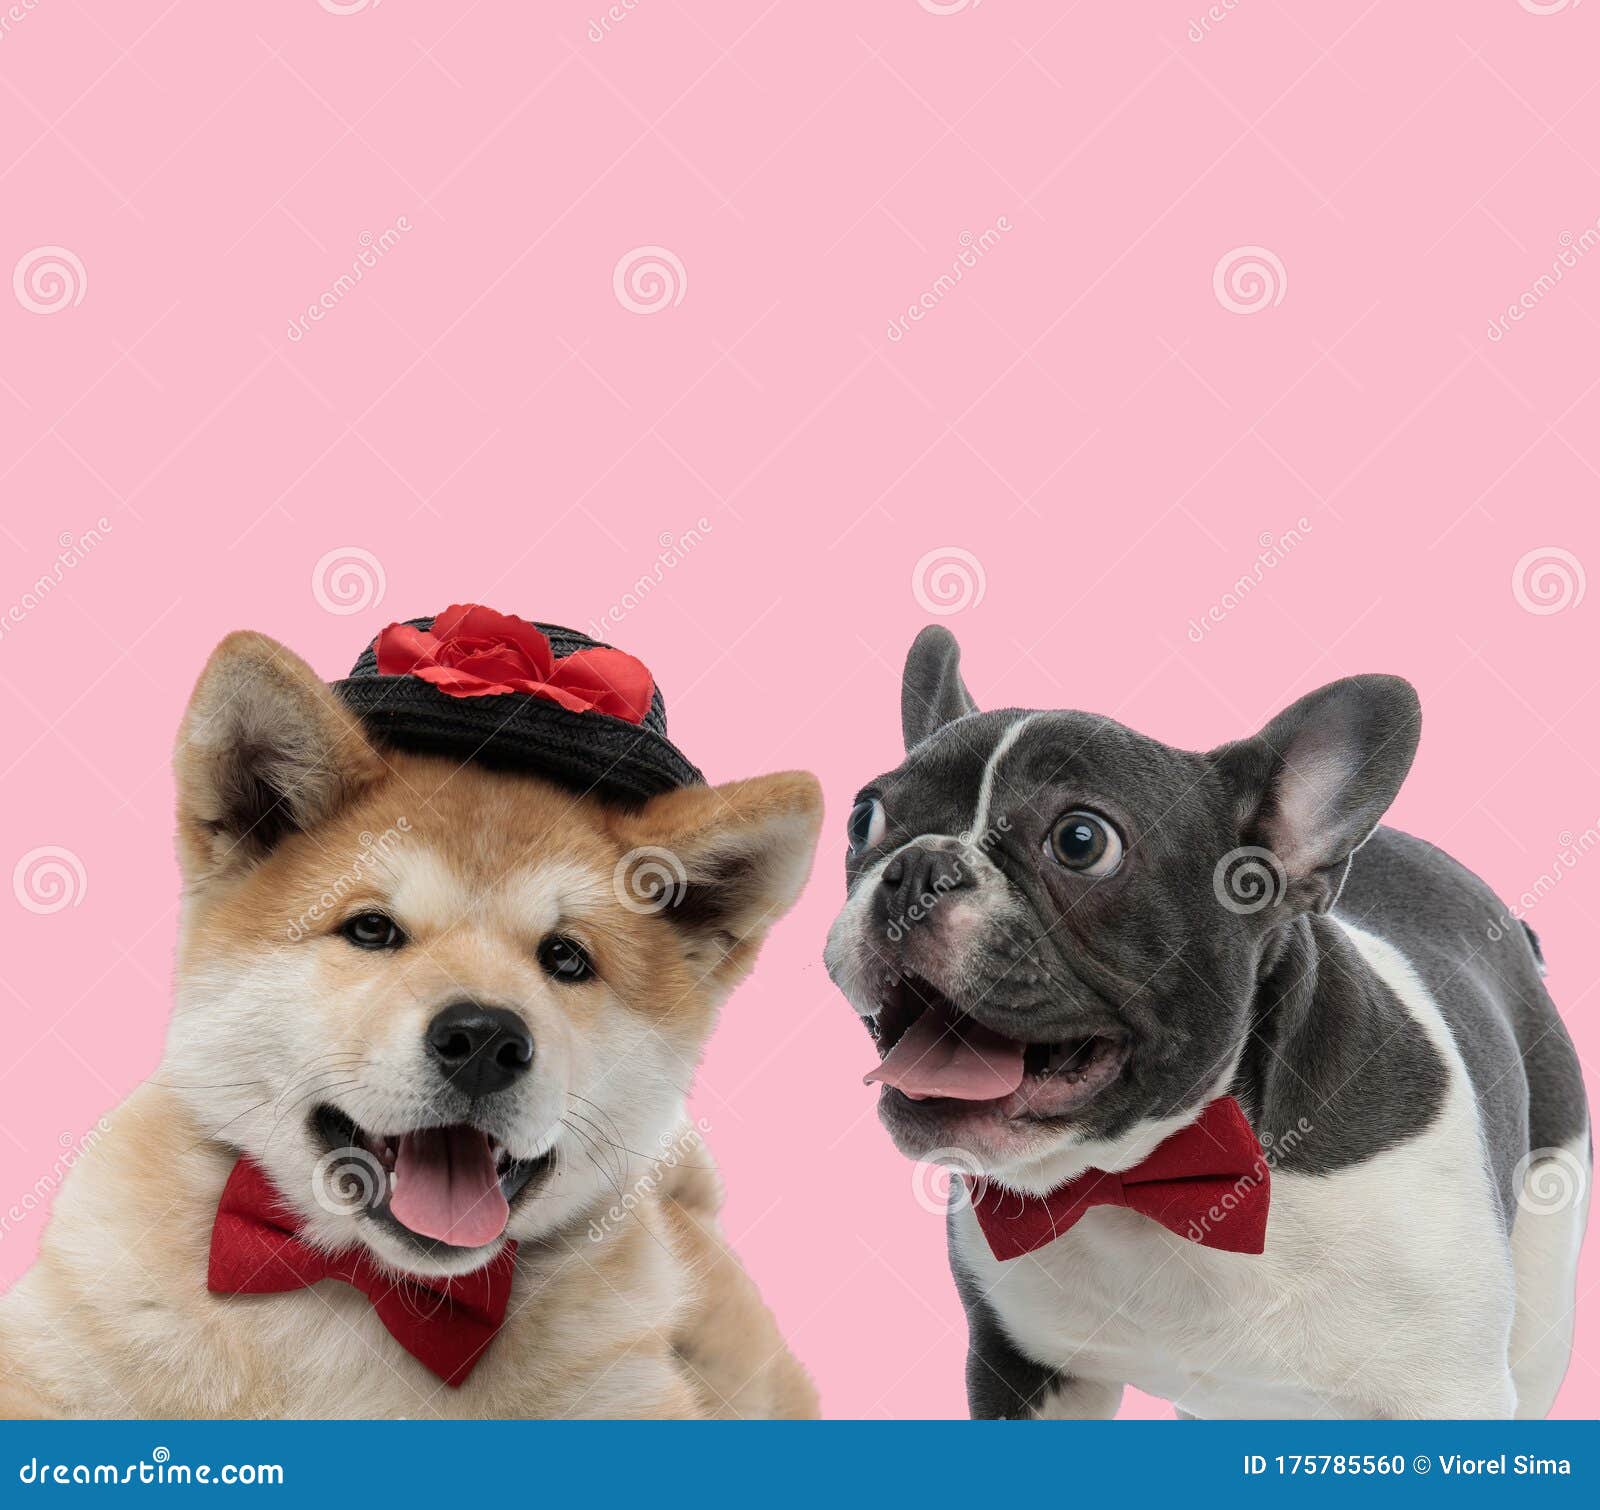 Nhóm Akita Inu và French Bulldog hợp tác để giải quyết những nhiệm vụ khó khăn! Bạn yêu thích những chú chó tuyệt đẹp và trung thành? Hãy xem ảnh về nhóm Akita Inu và French Bulldog này để cảm nhận sự đoàn kết và sự hợp tác giữa chúng!